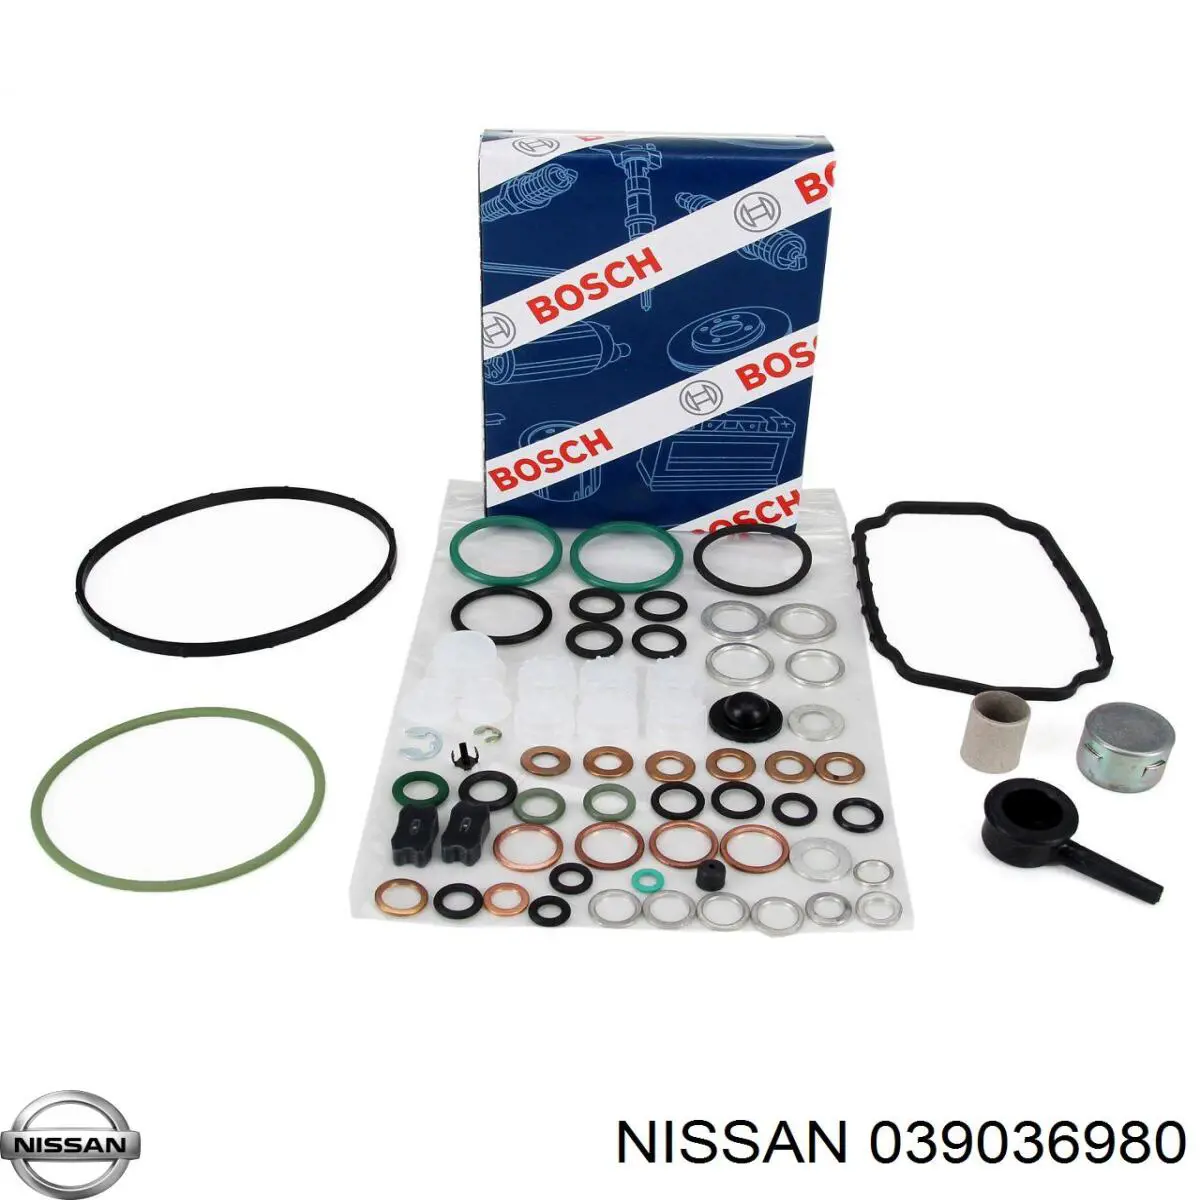 -03903698-0 Nissan kit de reparación, bomba de alta presión